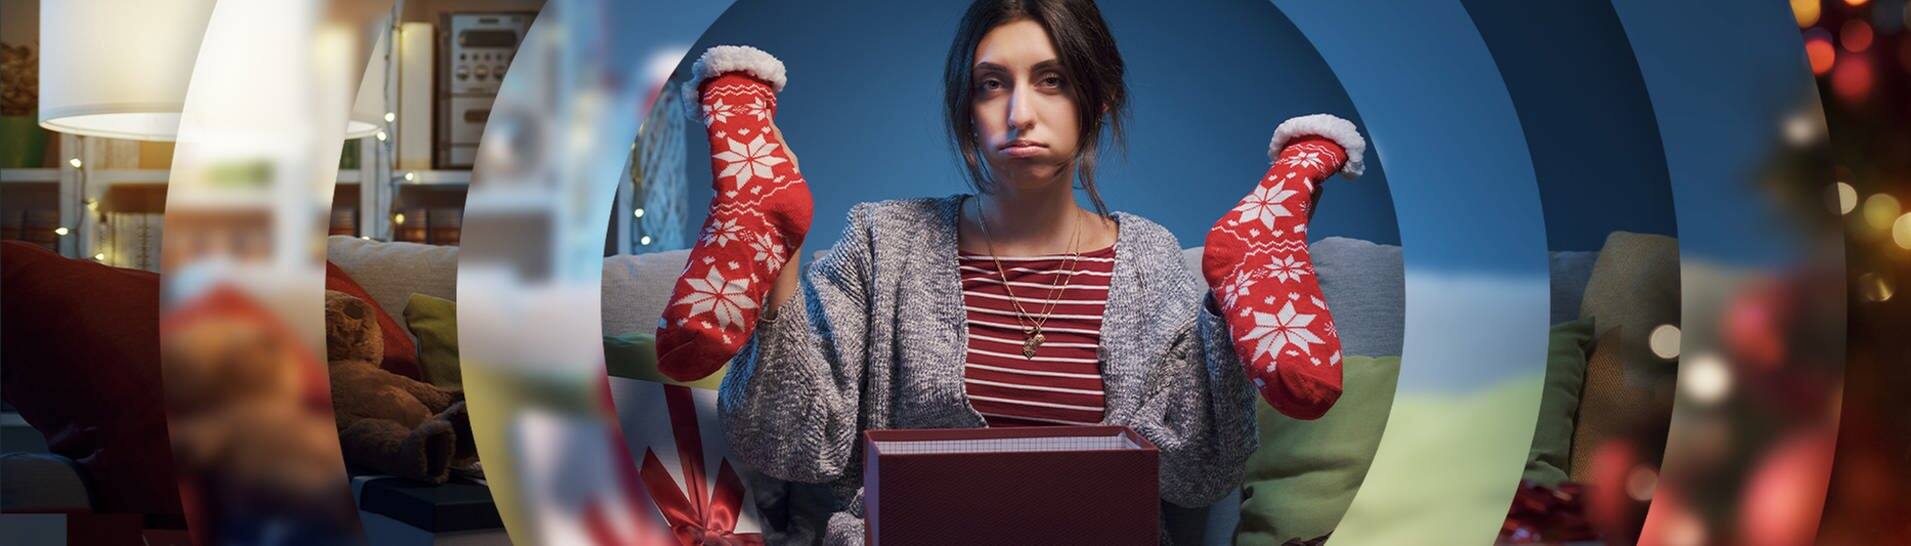 Eine Frau freut sich nicht über ein paar dicke Socken, dis sie gerade aus einem Geschenk ausgepackt hat. (Foto: Adobe Stock/StockPhotoPro)